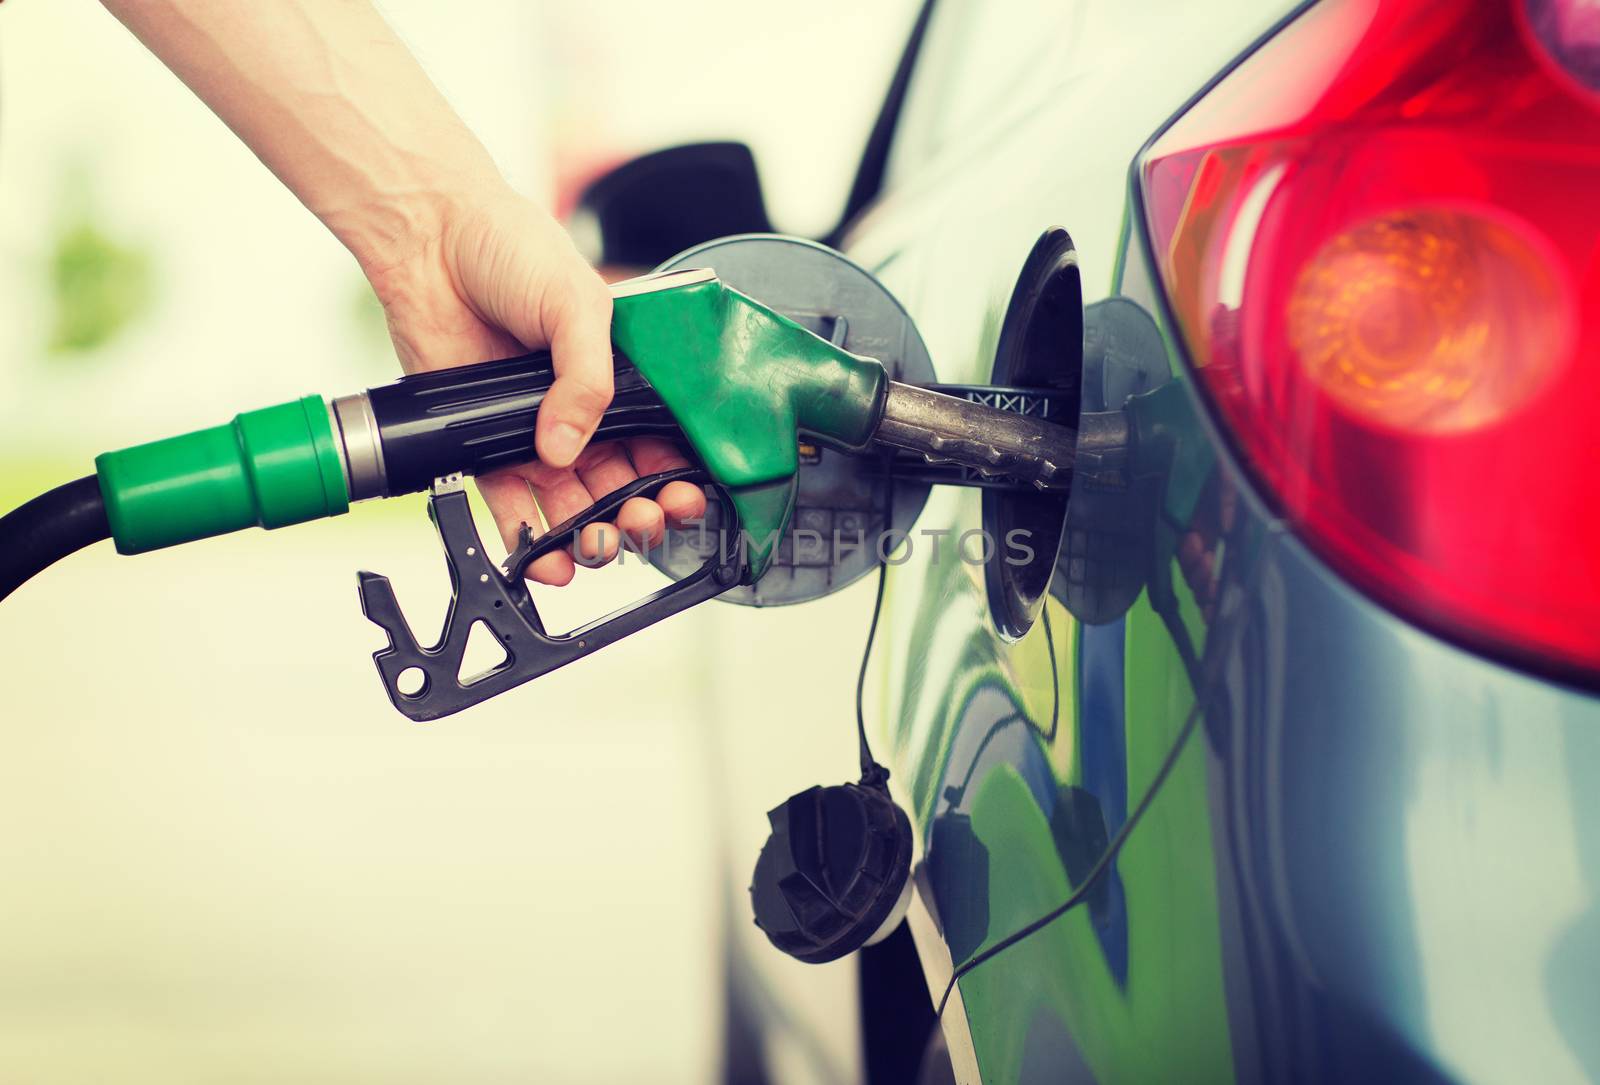 man pumping gasoline fuel in car at gas station by dolgachov